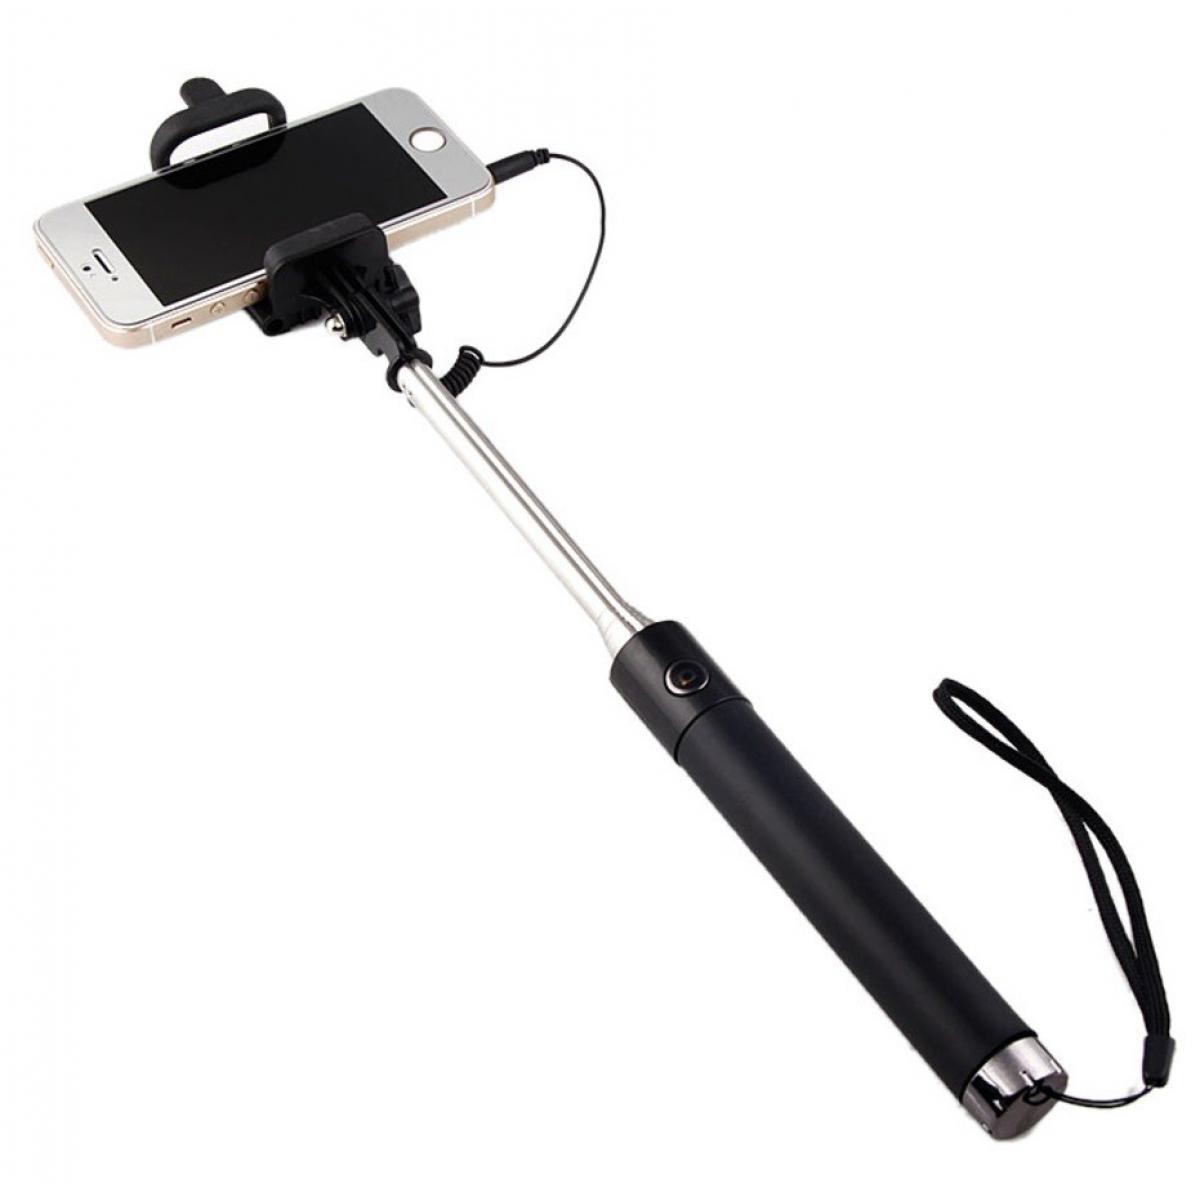 Shot - Perche Selfie Metal pour IPHONE 12 avec Cable Jack Selfie Stick Android IOS Reglable Bouton Photo (NOIR) - Autres accessoires smartphone